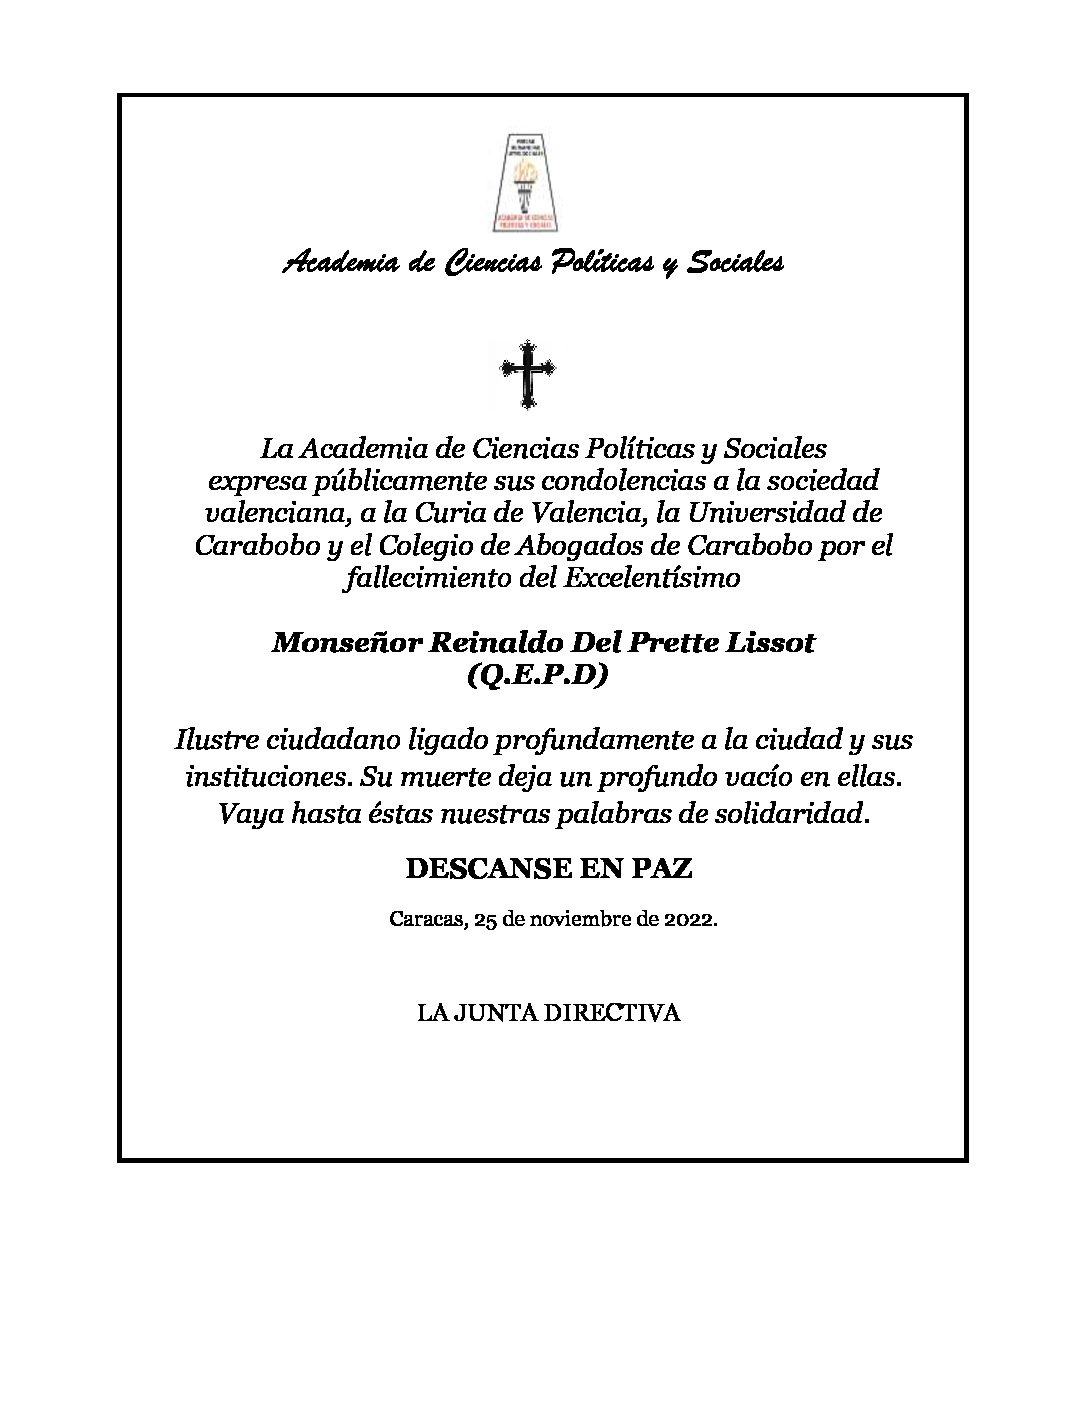 Nota de pesar de la Academia de Ciencias Políticas y Sociales por el sensible fallecimiento del Excelentísimo Monseñor Reinaldo Del Prette Lissot